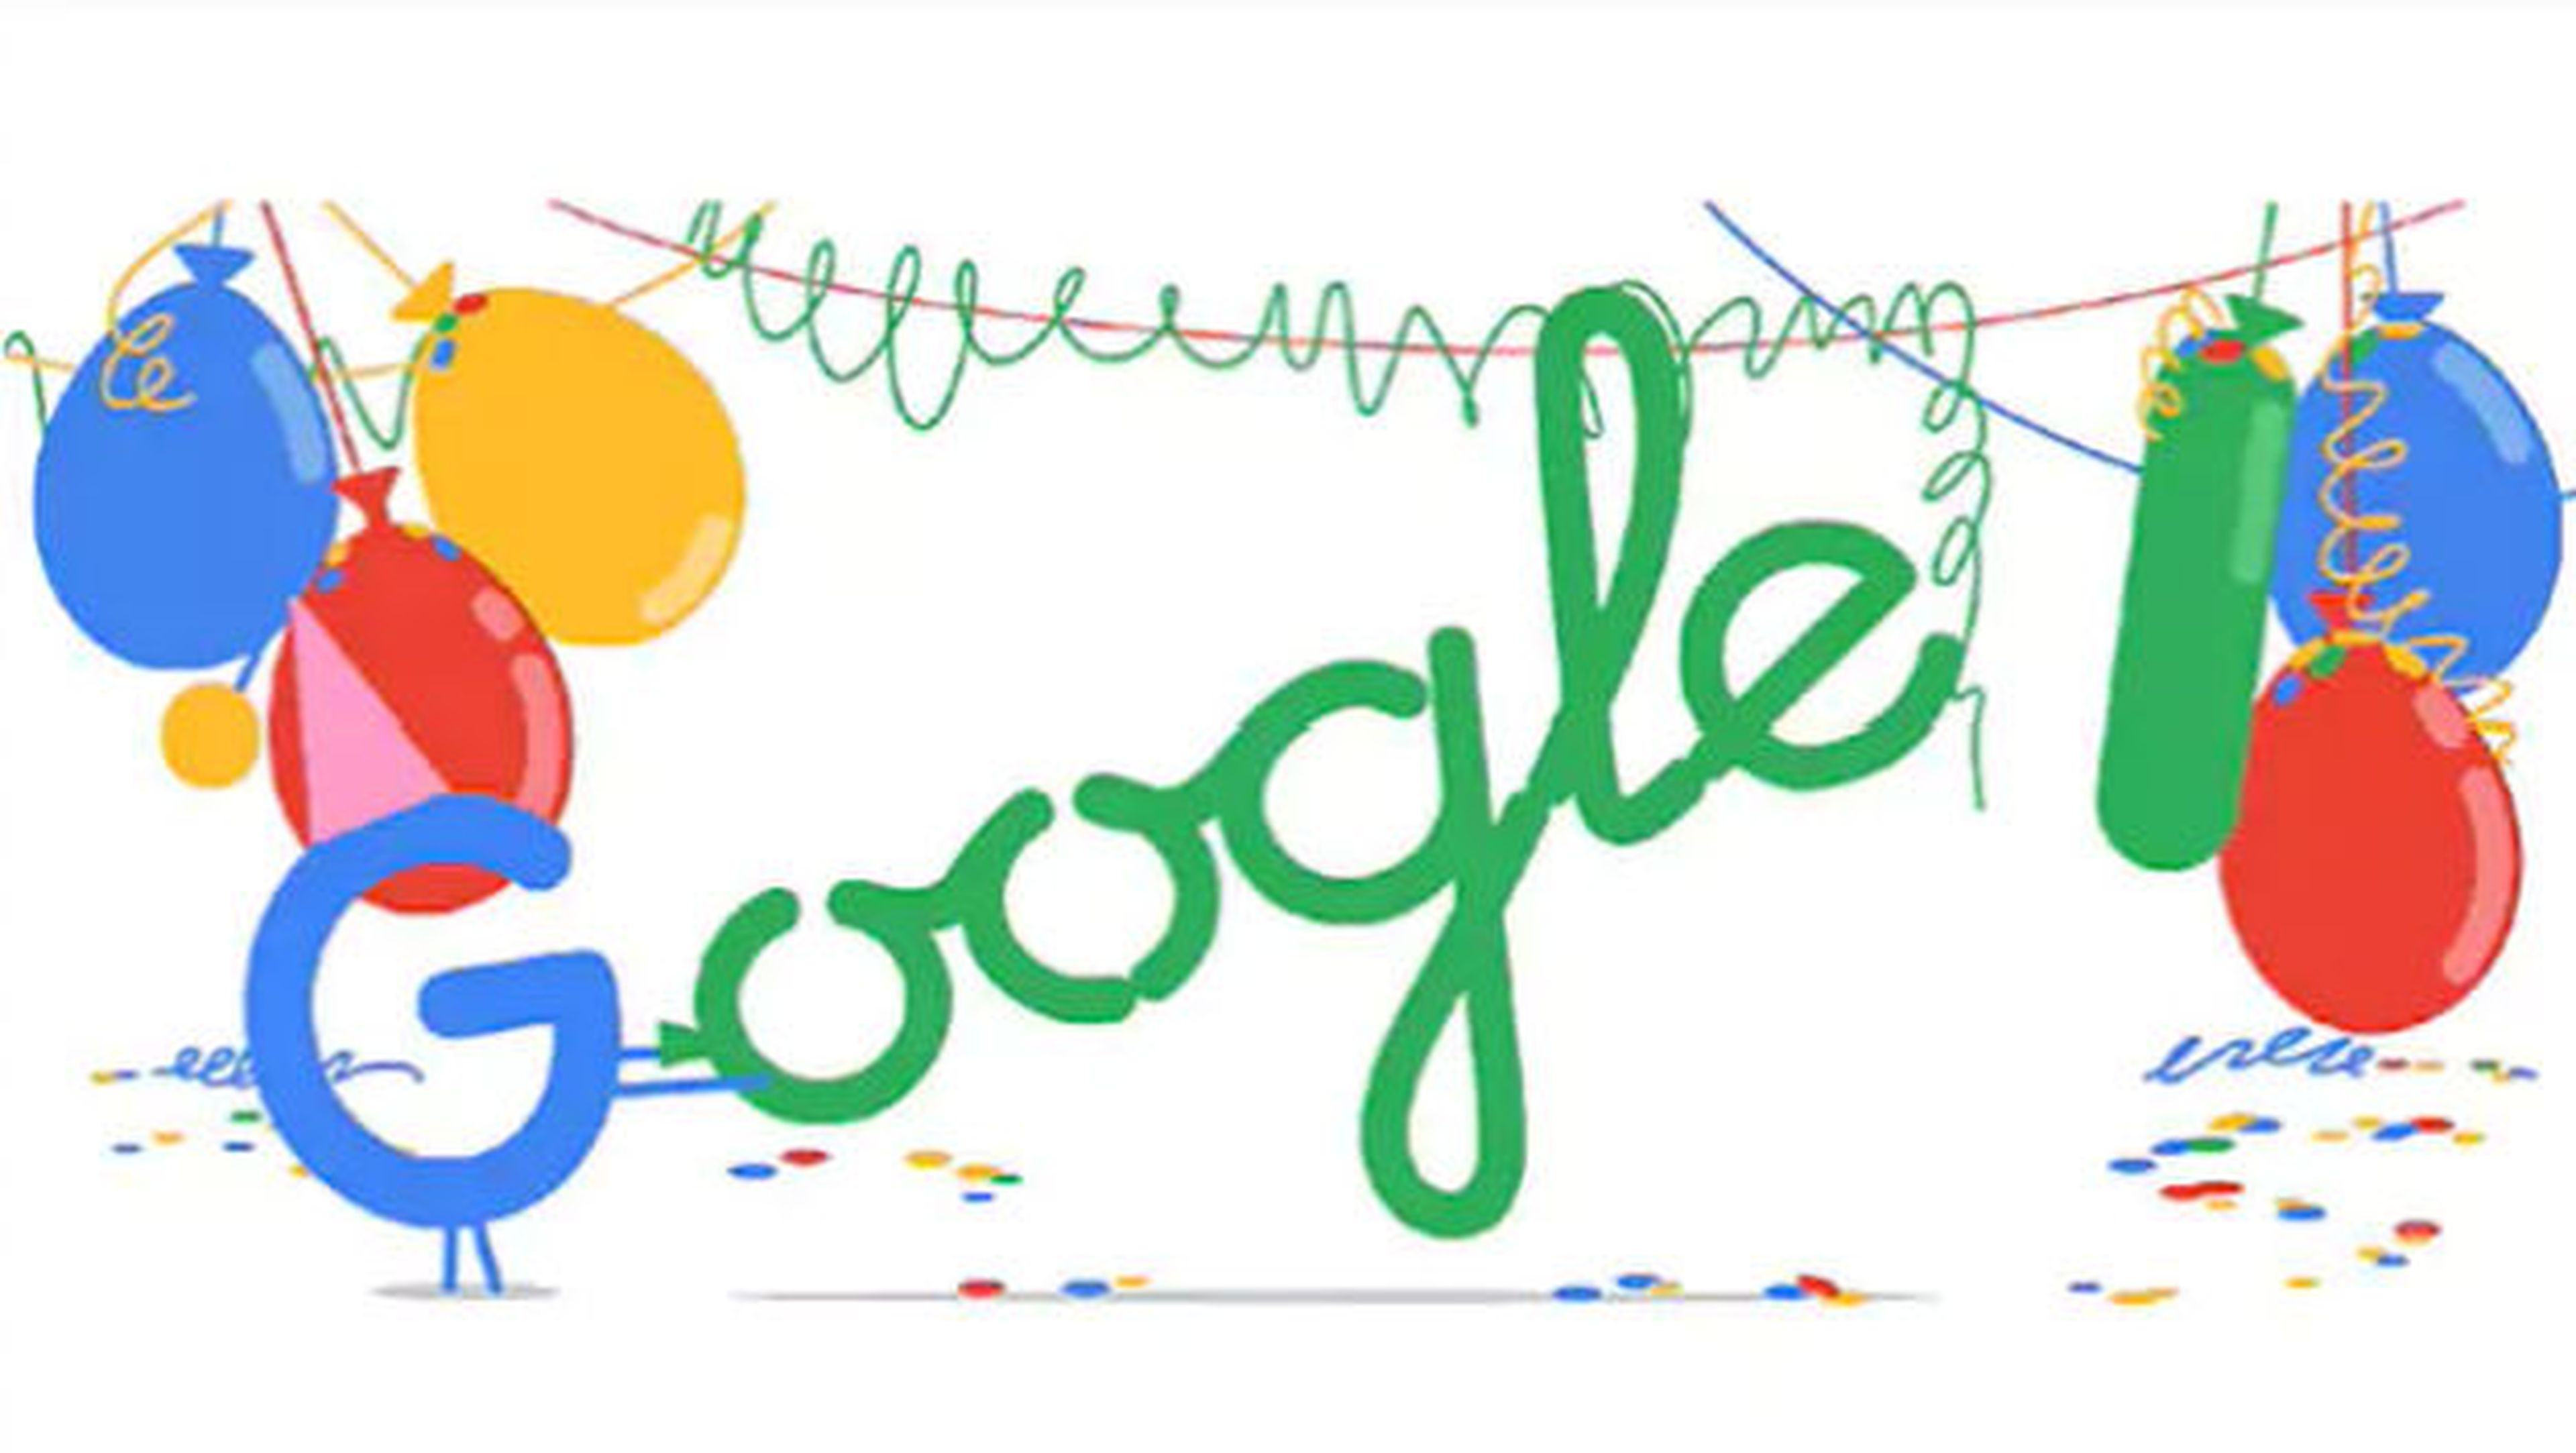 Hoy es el cumpleaños del buscador de Google.